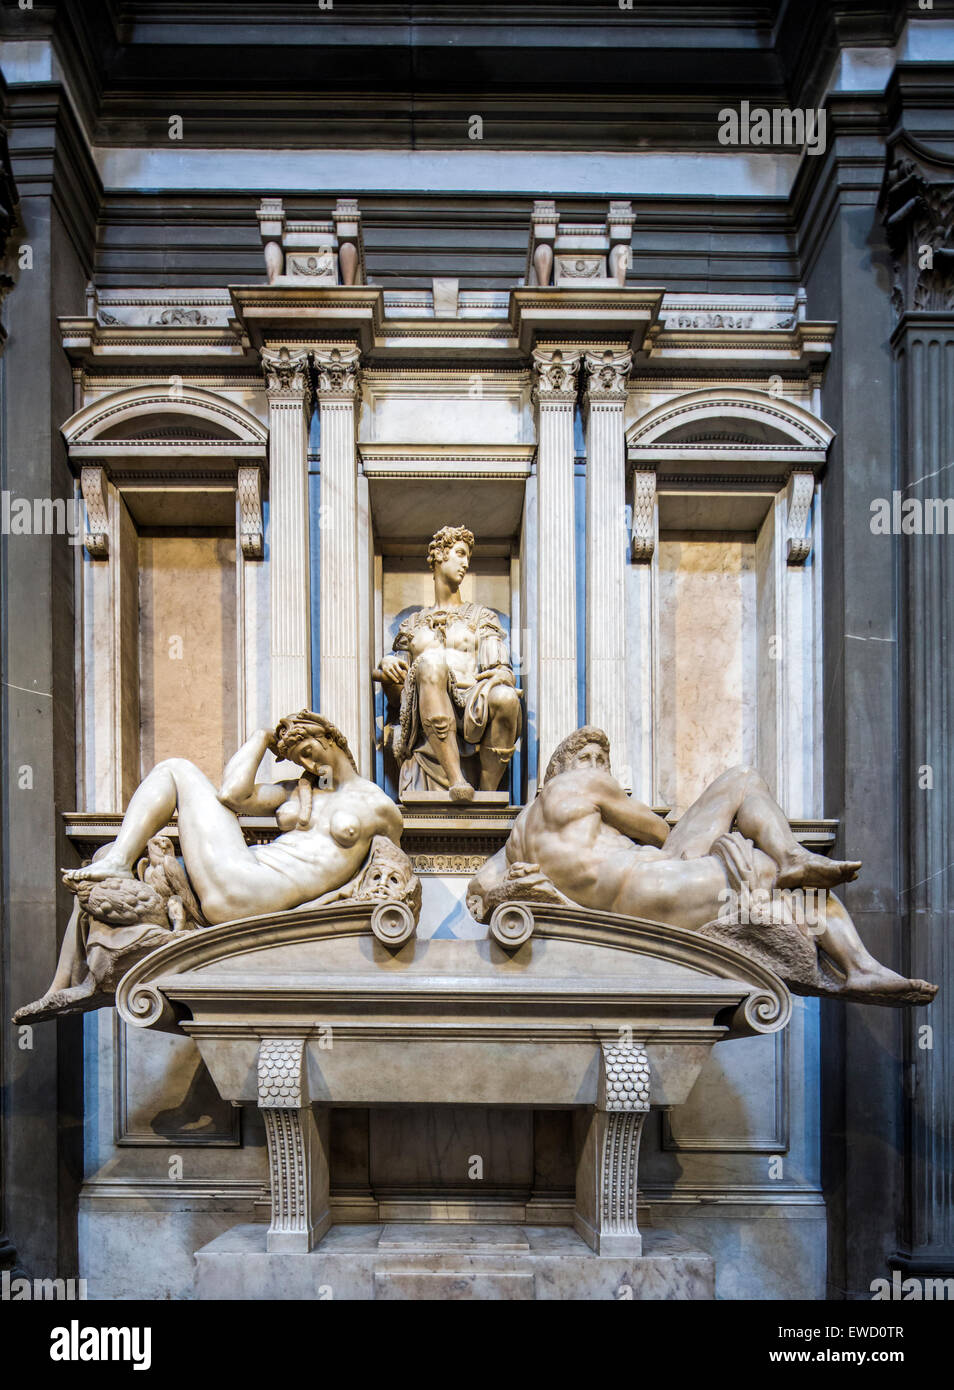 Tombe de Giuliano di Lorenzo de' Medici, sculpture de Michel-Ange, nouvelle sacristie, basilique San Lorenzo, Florence, Italie. Banque D'Images